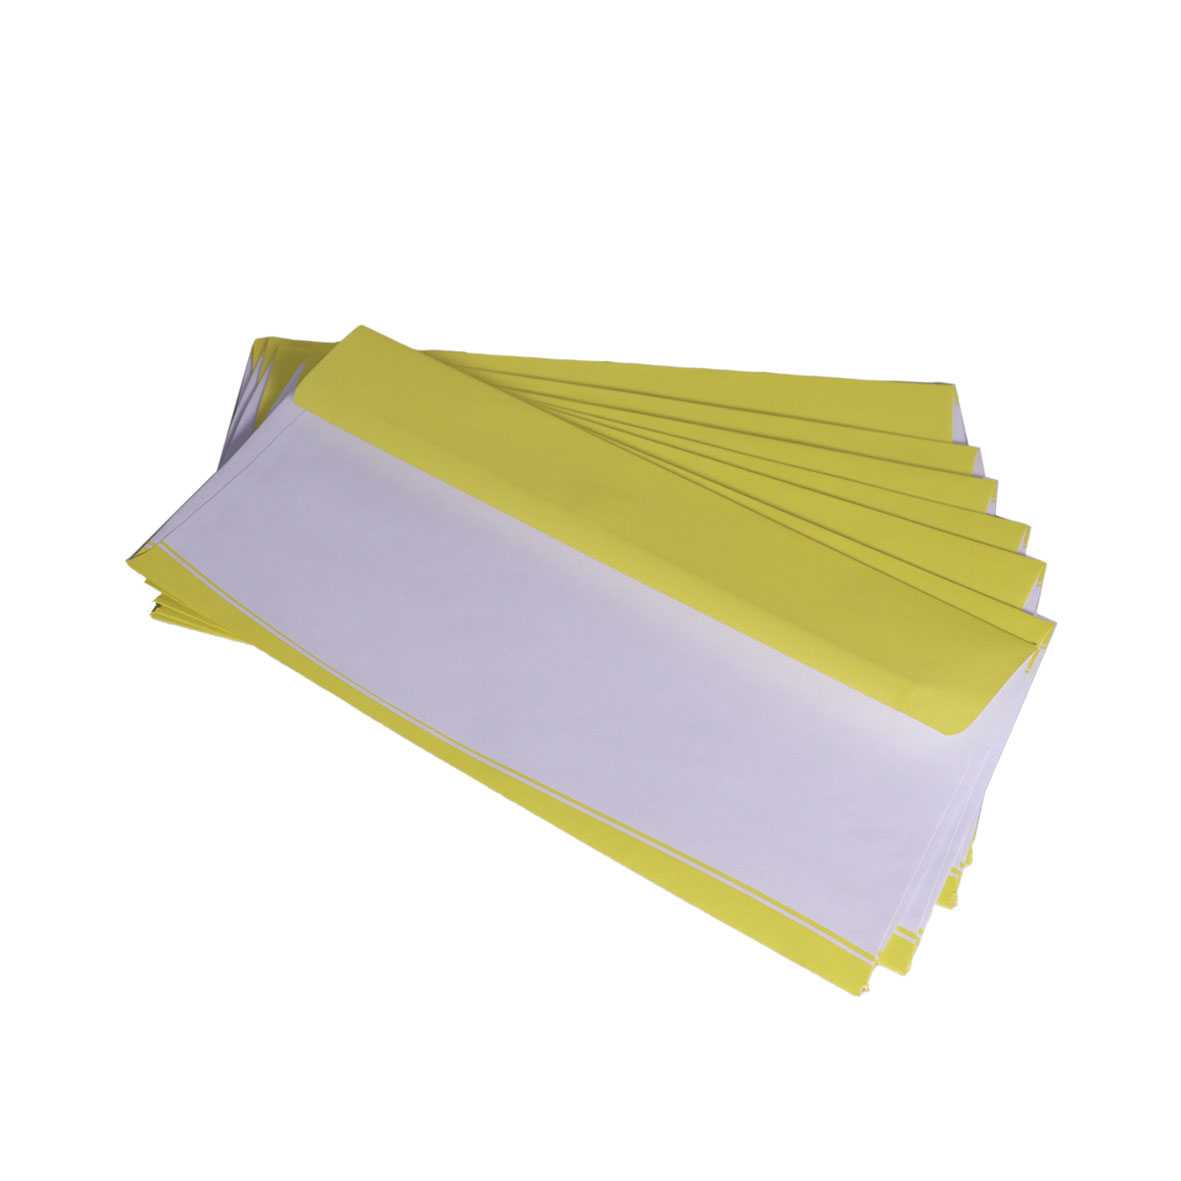 پاکت نامه رنگی لبه زرد بسته 500 عددی